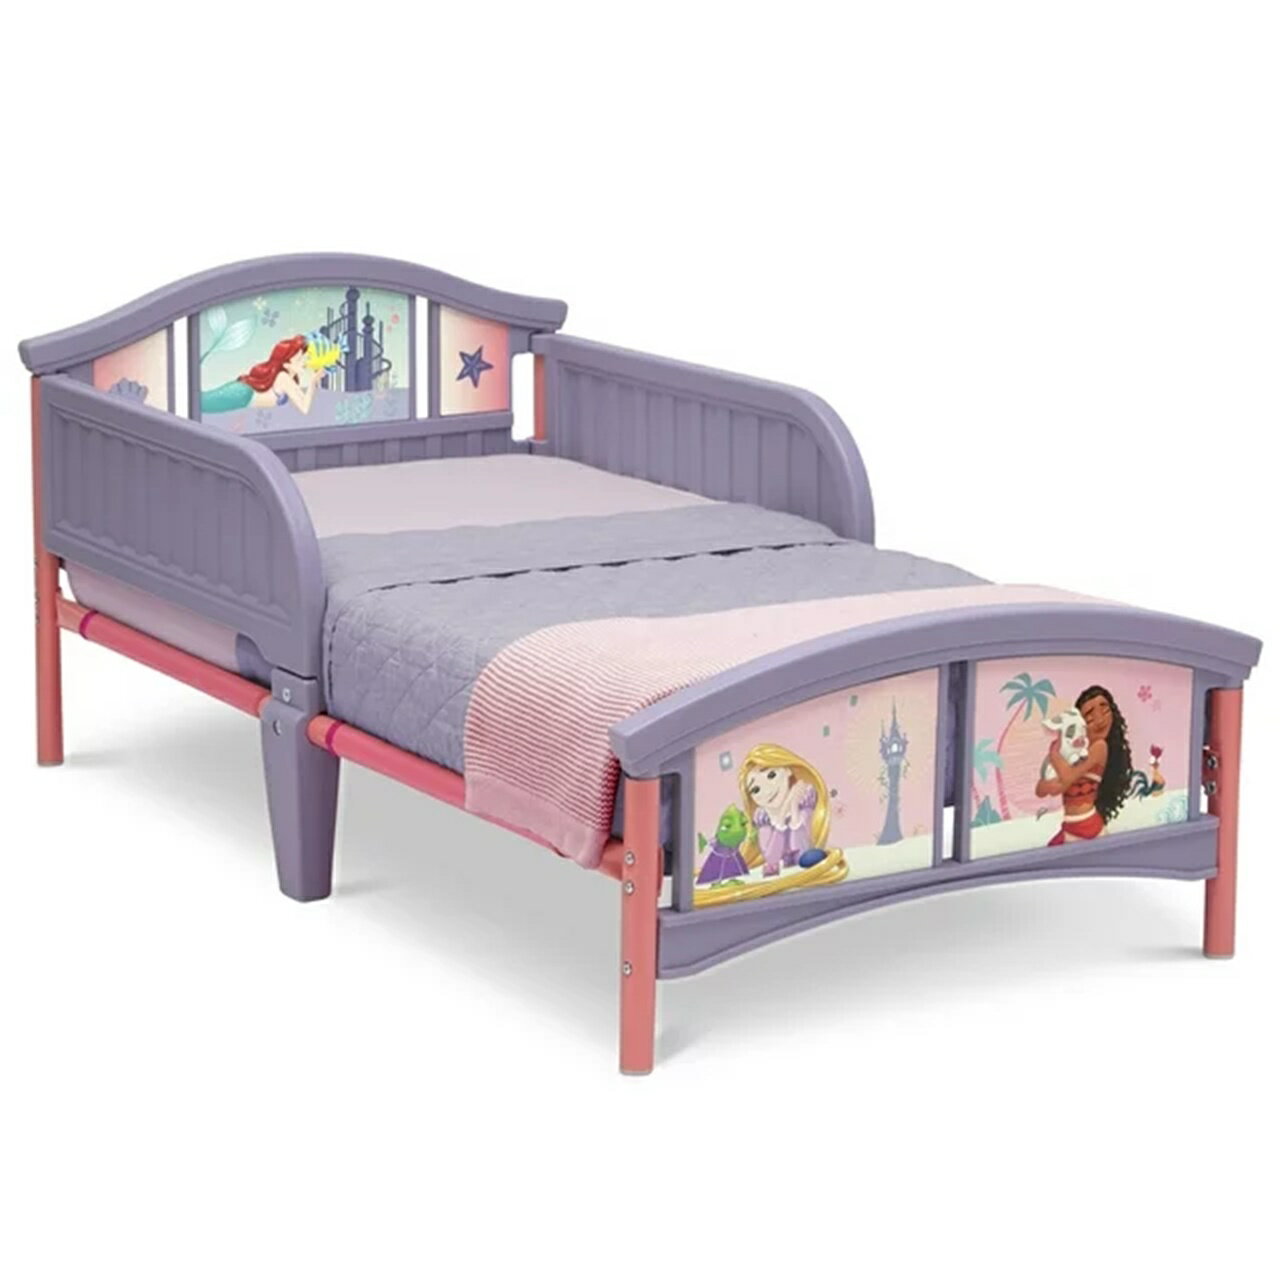 ベビーベッド Disney ディズニー プリンセス Delta Children's 組み立て式 子供用ベッド